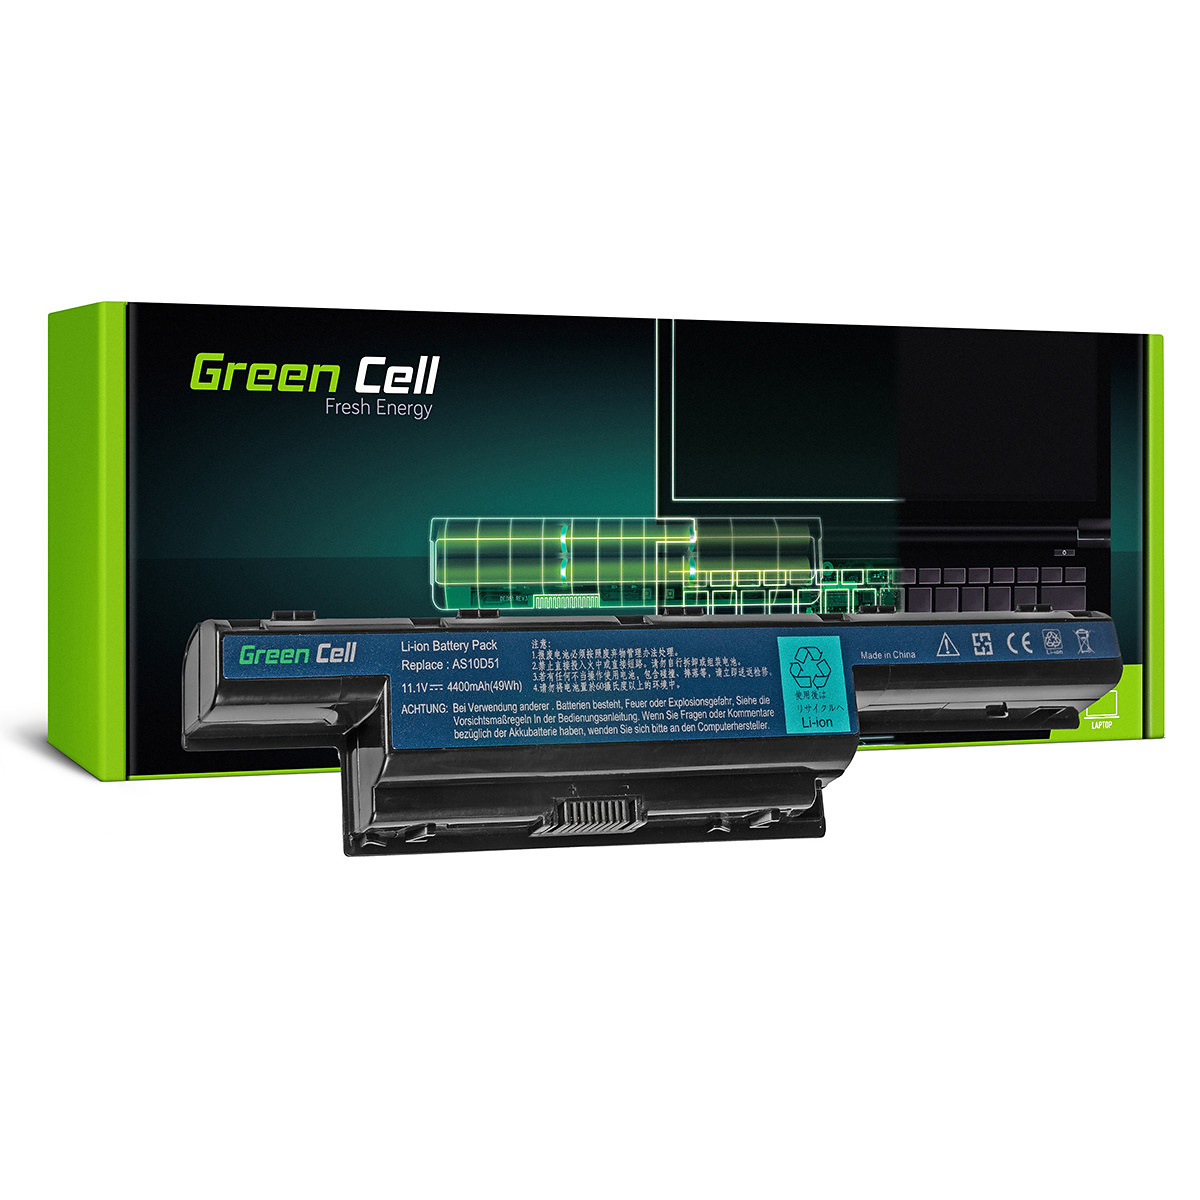 Green Cell Laptopbatteri för Acer Aspire 5740G 5741G, 11.1V, 4400mAh